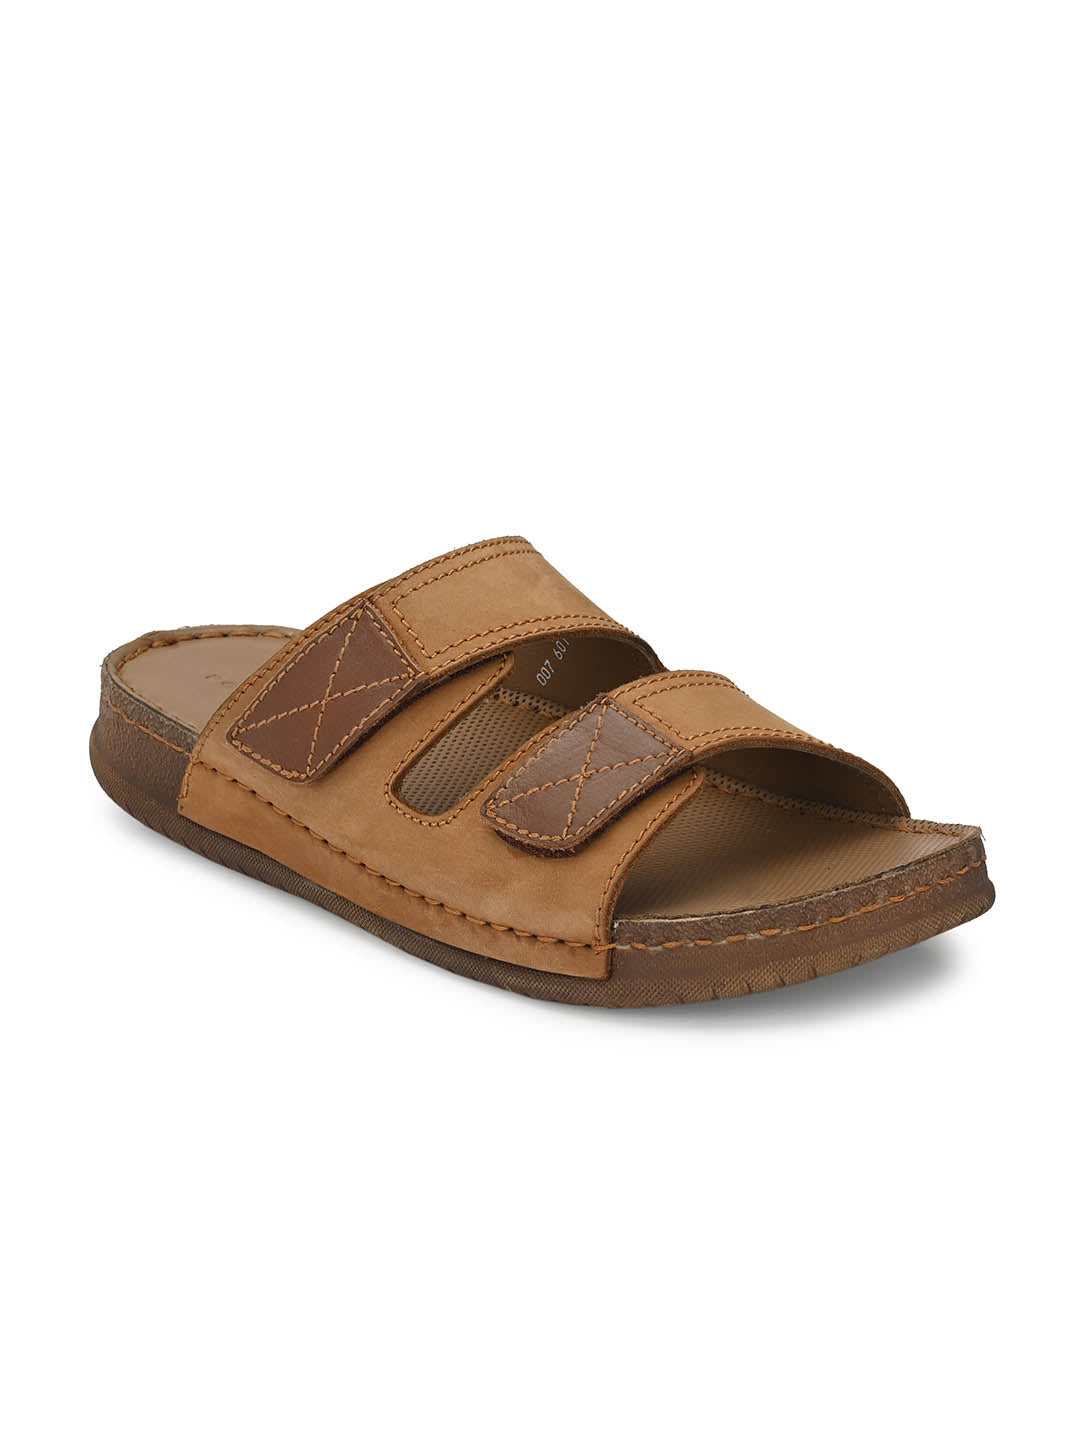 Men Tan Leather Sandals Hitz Shoes Online